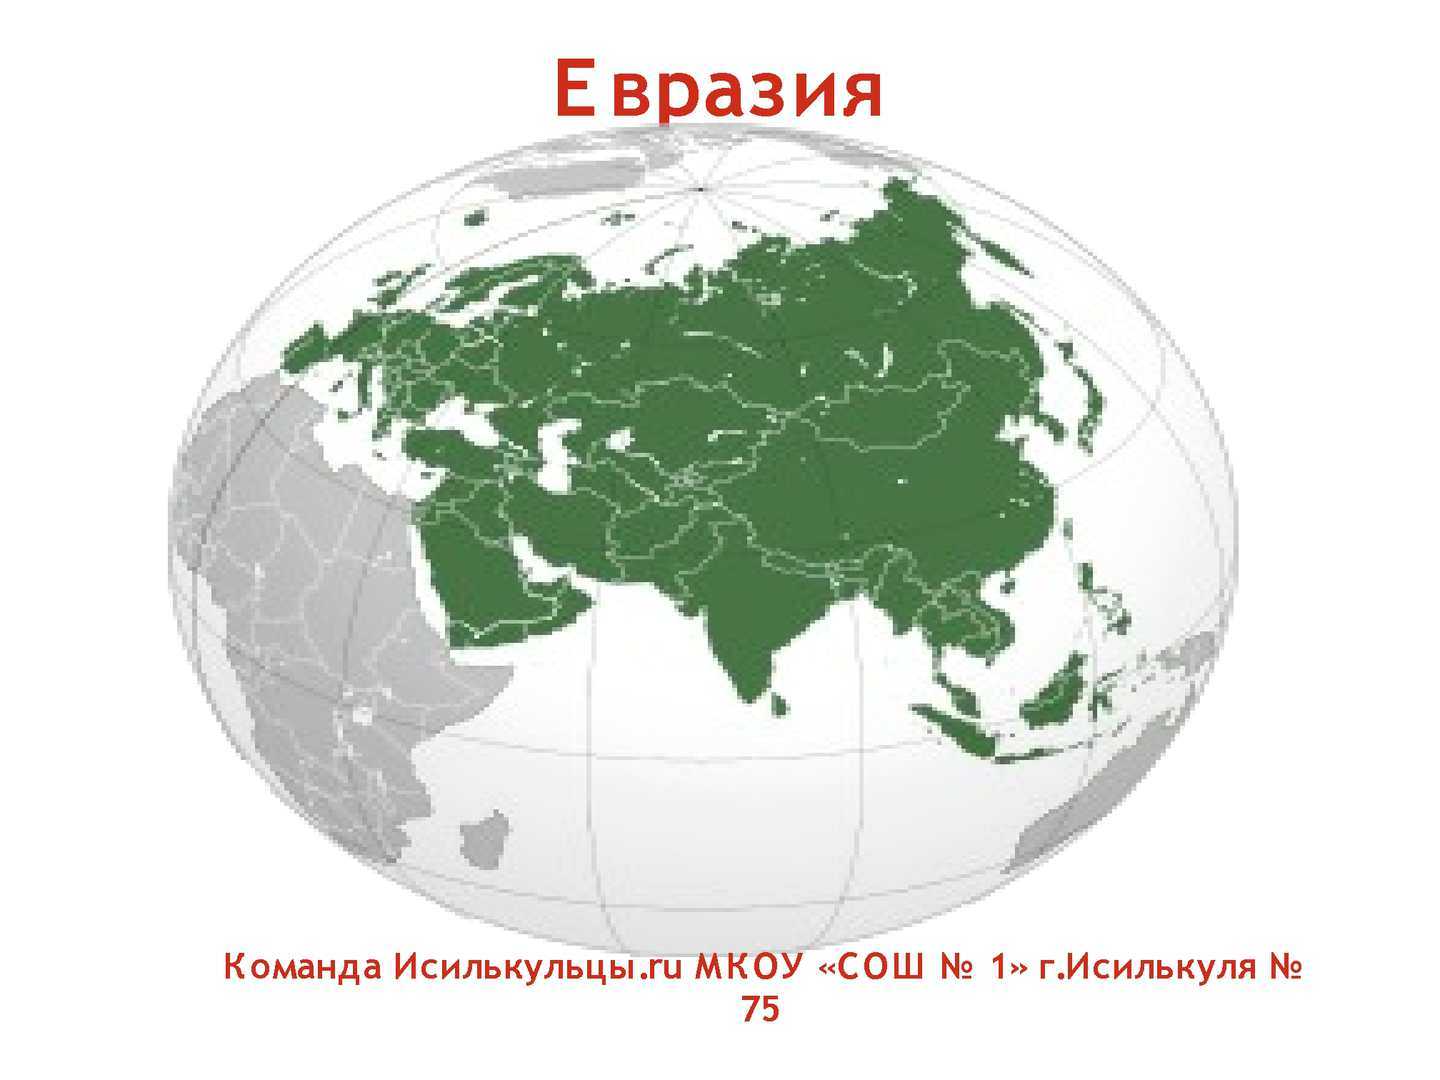 Ао евразия. Материк Евразия. Континент Евразия. Материк Евразия на прозрачном фоне. Изображение Евразии.